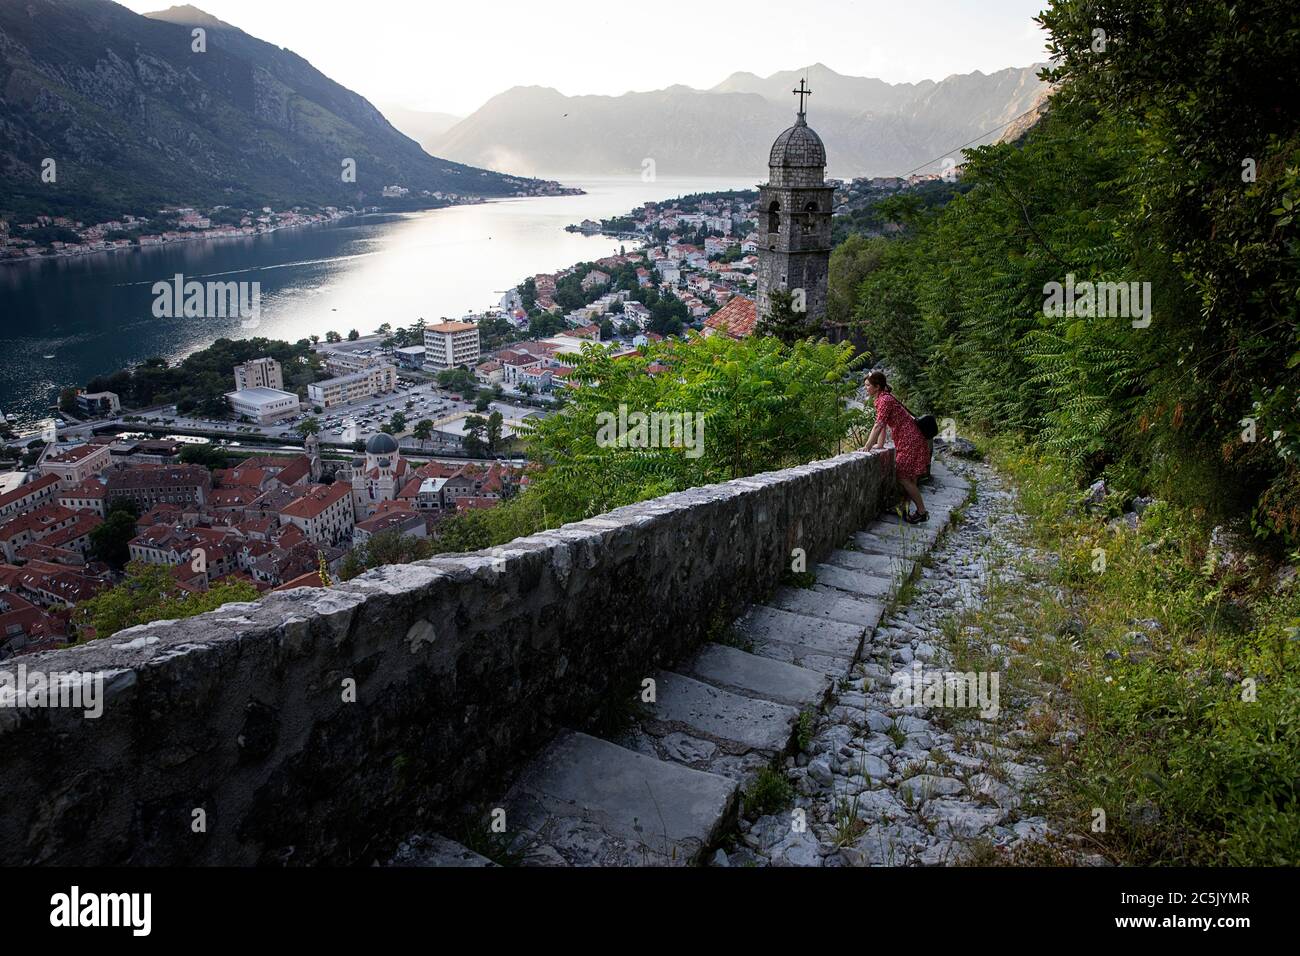 Mutter und Sohn blicken auf die Altstadt von Kotor von der Stadtmauer ohne Kreuzfahrtschiff während der Corona-Krise, Montenegro, Balkan, Südeuropa Stockfoto